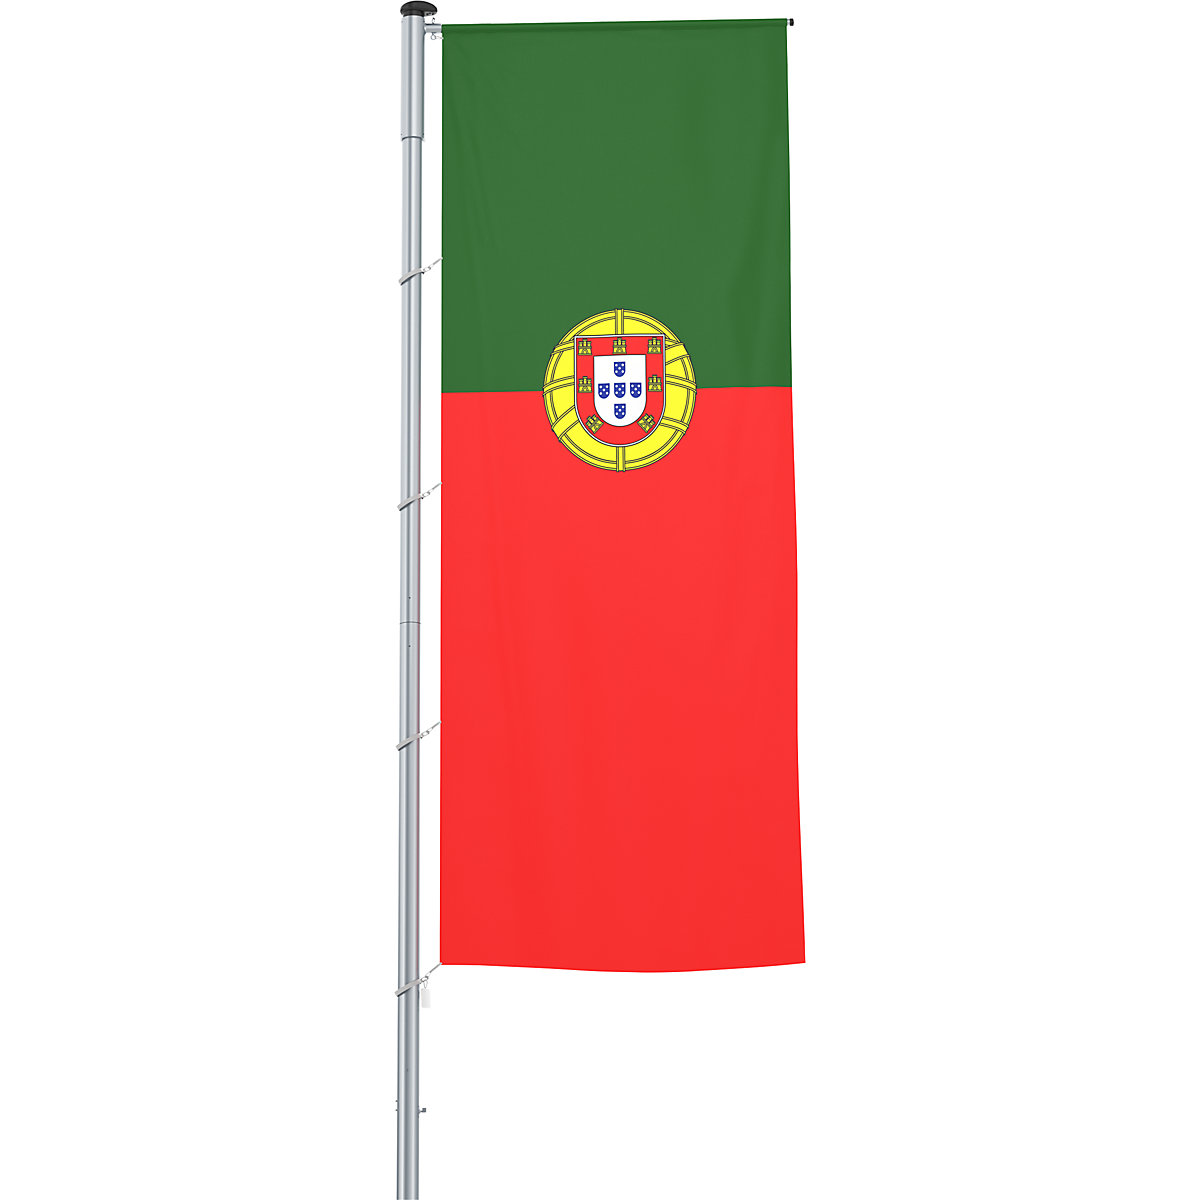 Mannus – Bandera con pluma/bandera del país (Imagen del producto 43)